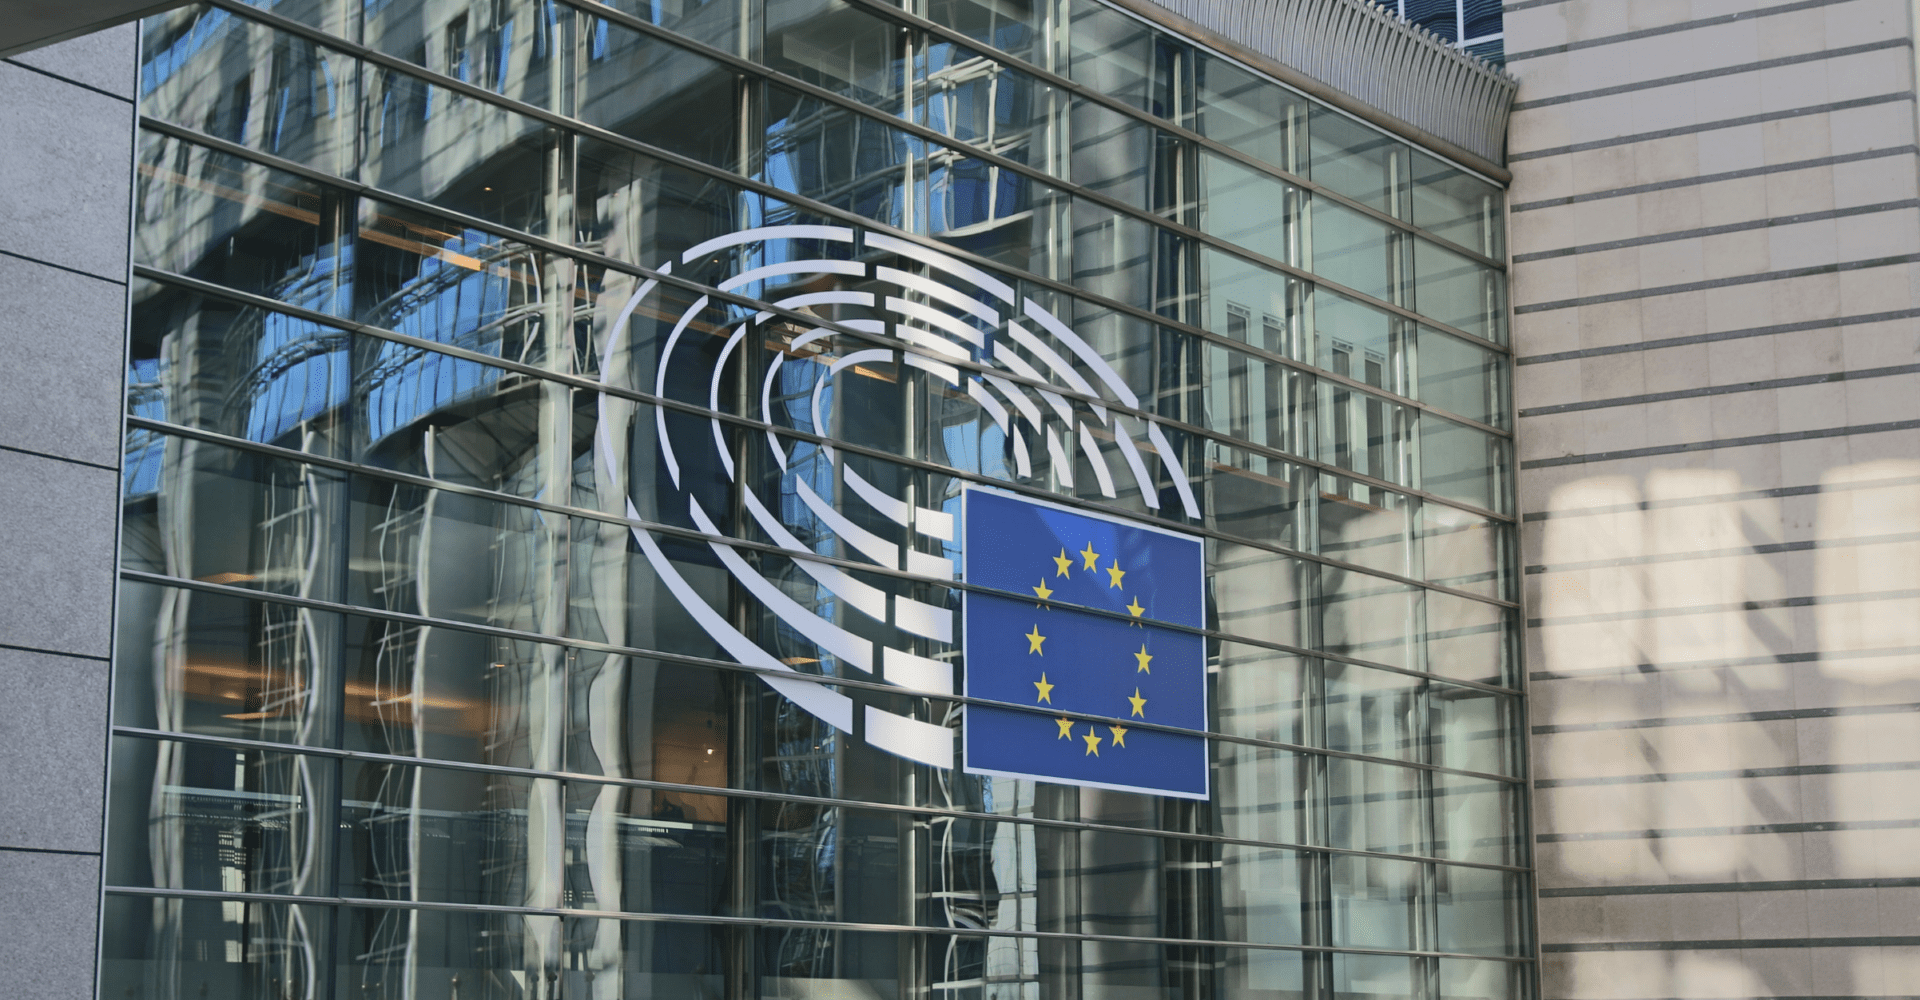 Szklany budynek z logotypem parlamentu europejskiego.